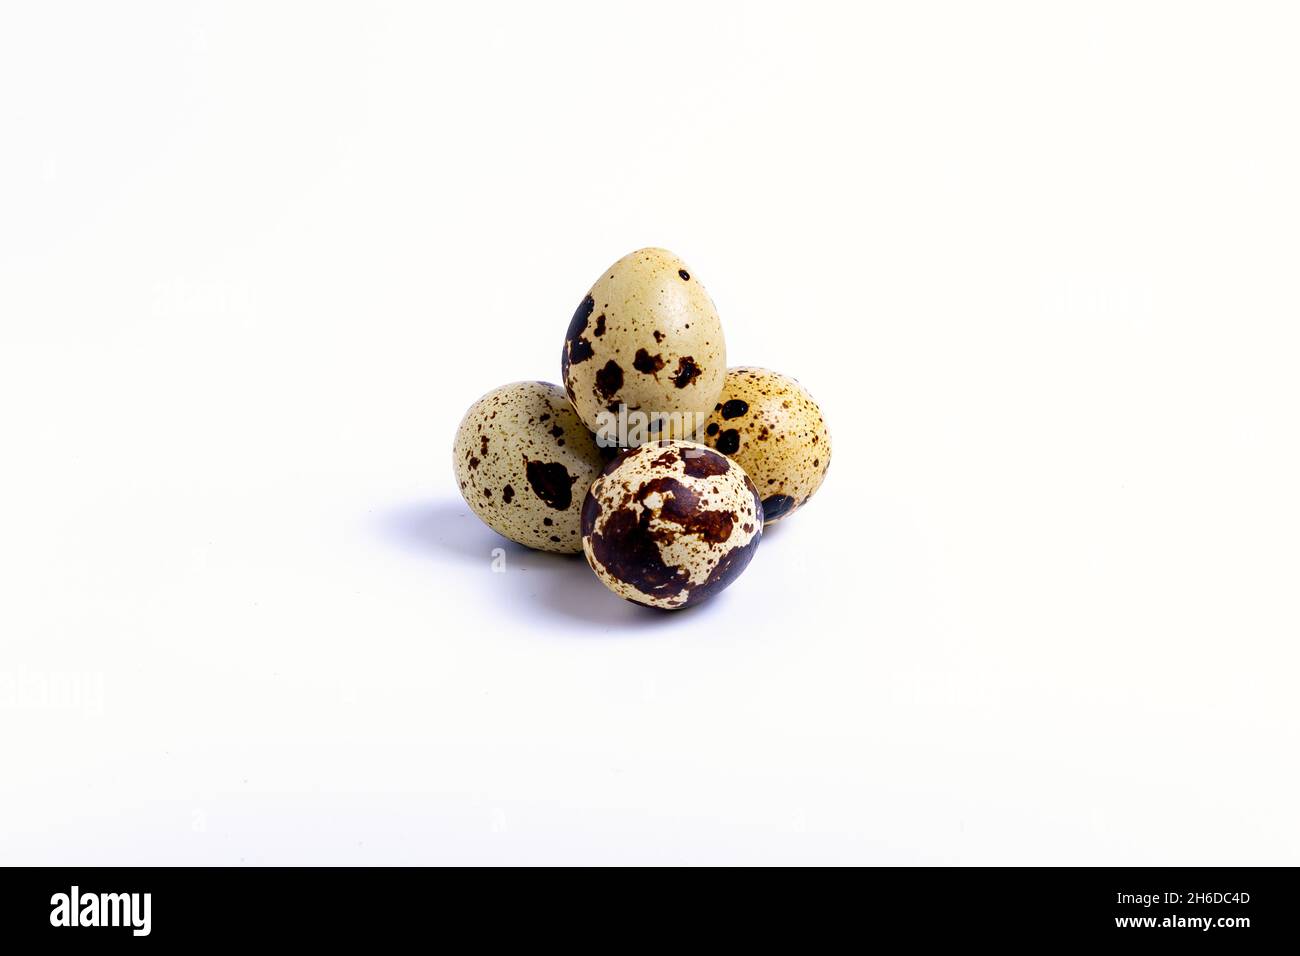 isolare, un mazzo di uova di quaglia su sfondo bianco, primo piano Foto Stock